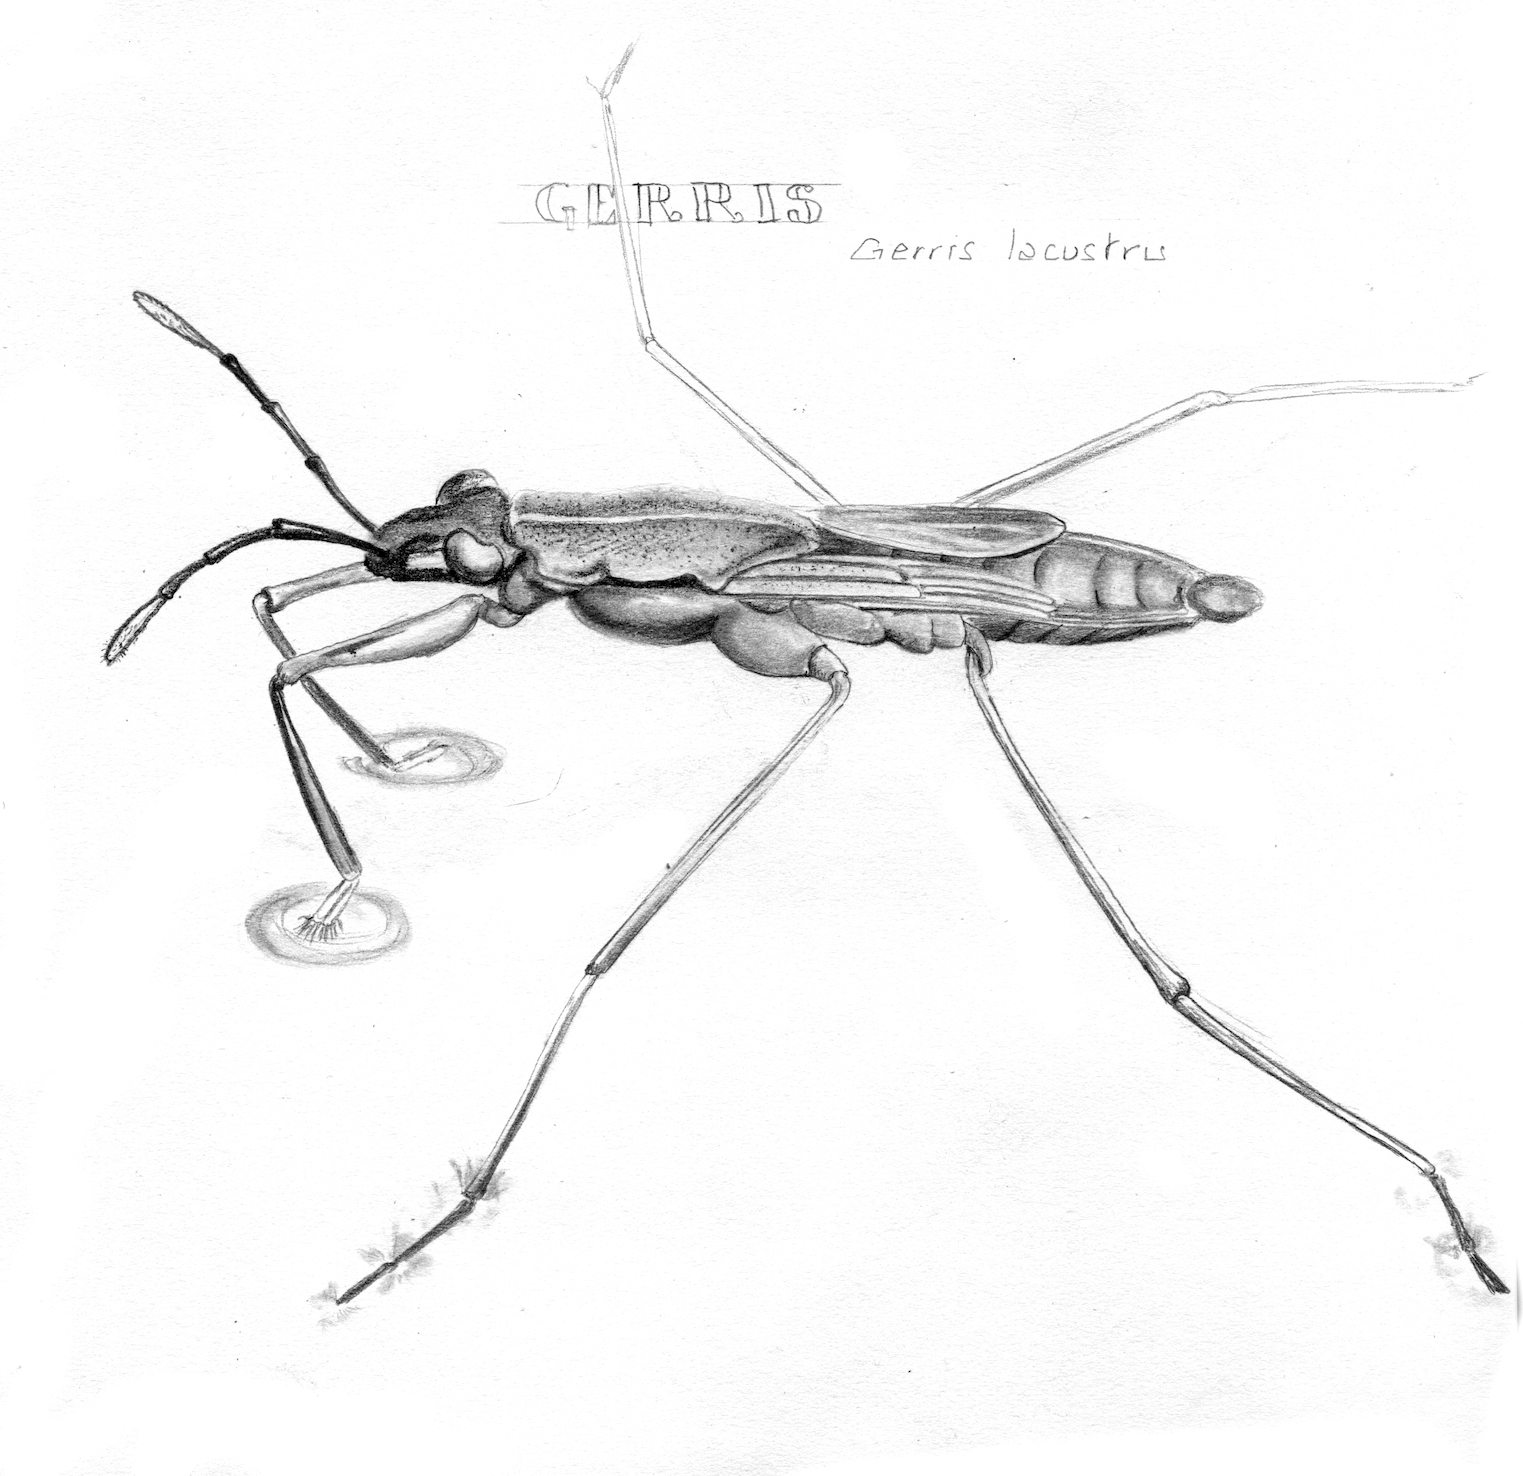 dessin au graphite sur papier Ingres d'une araignée d'eau ©I.Frances 2011